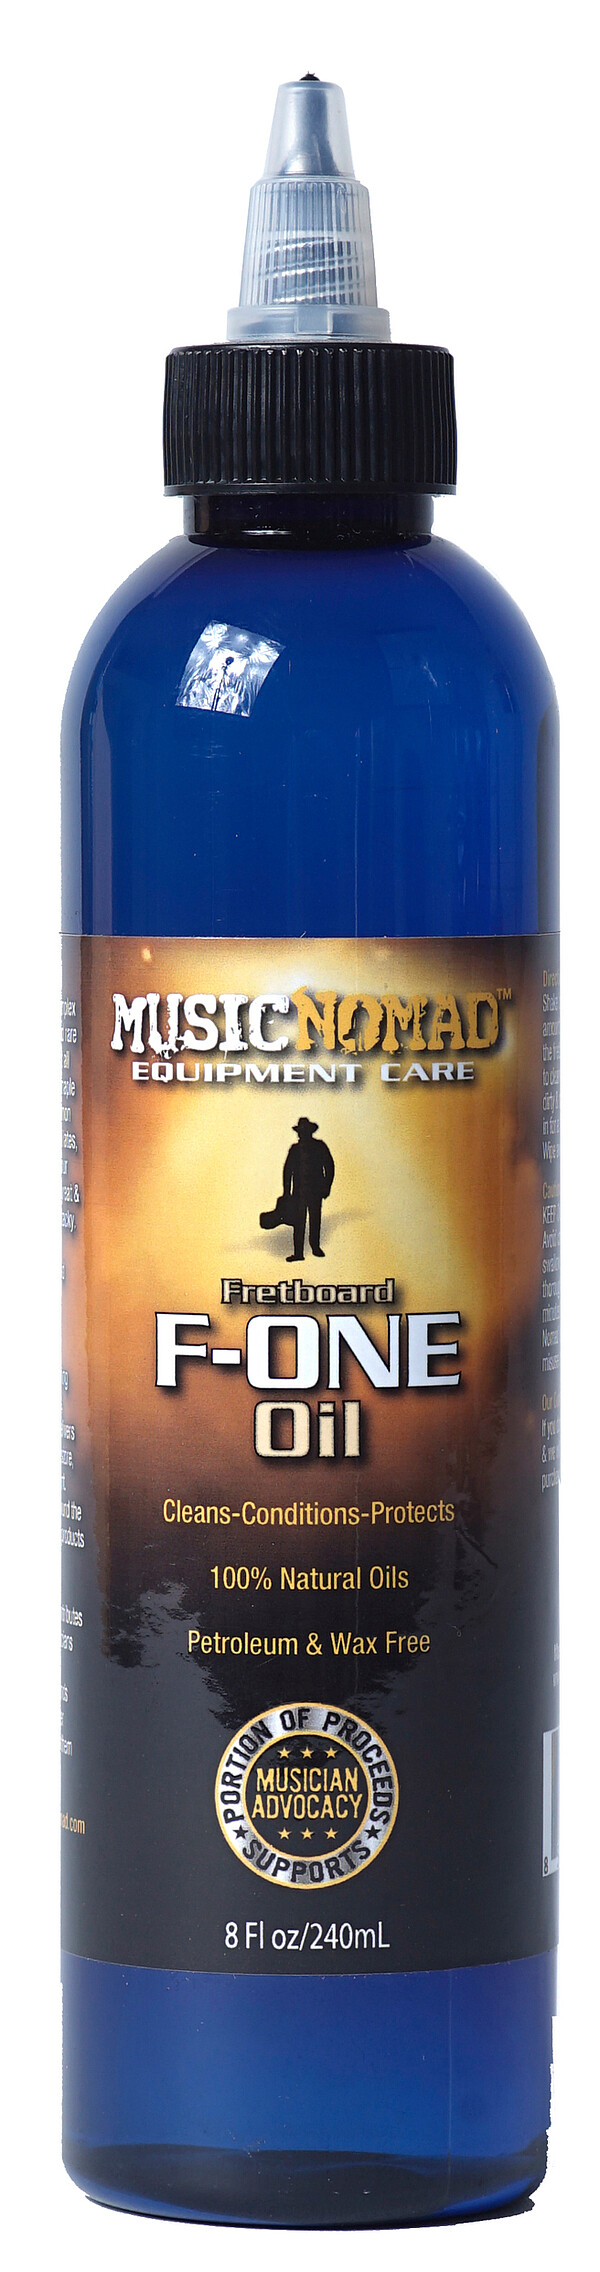 MusicNomad Fretboard F-ONE Oil Tech Size (MN151)